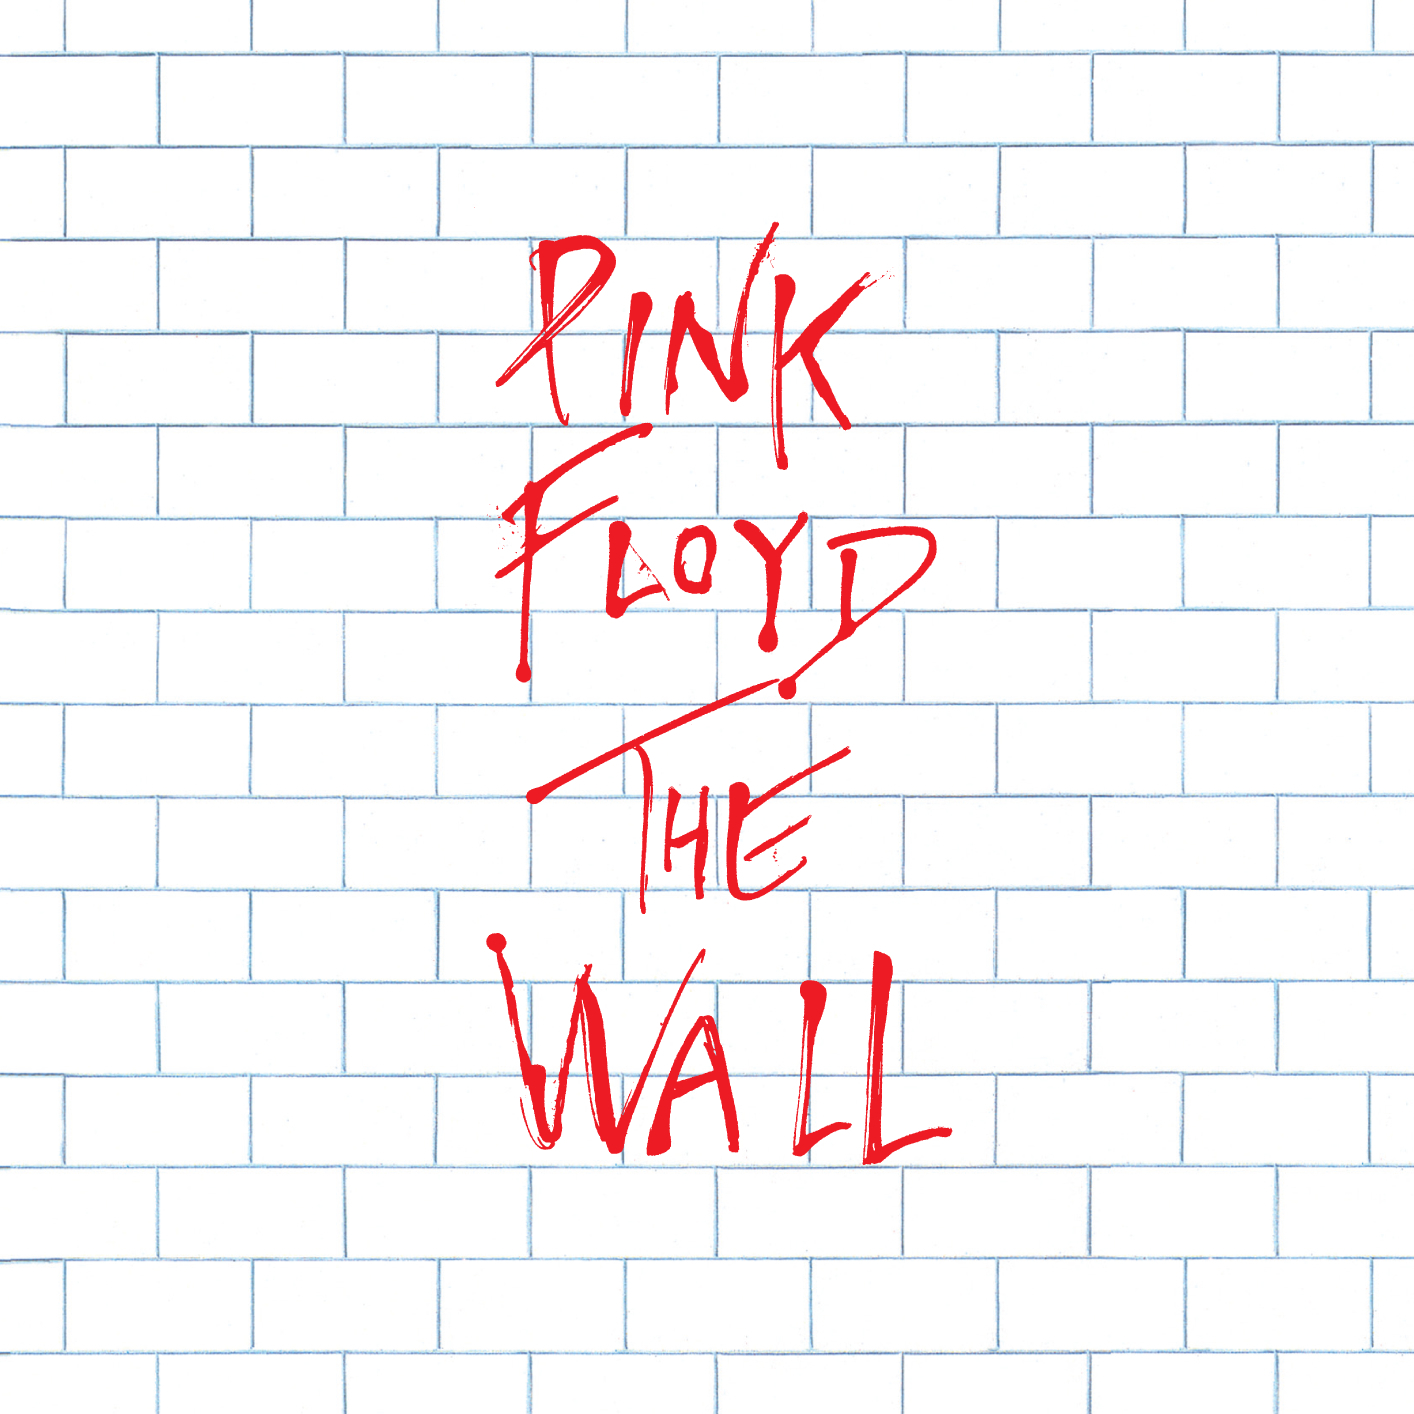 pink floyd the wall album tracklist